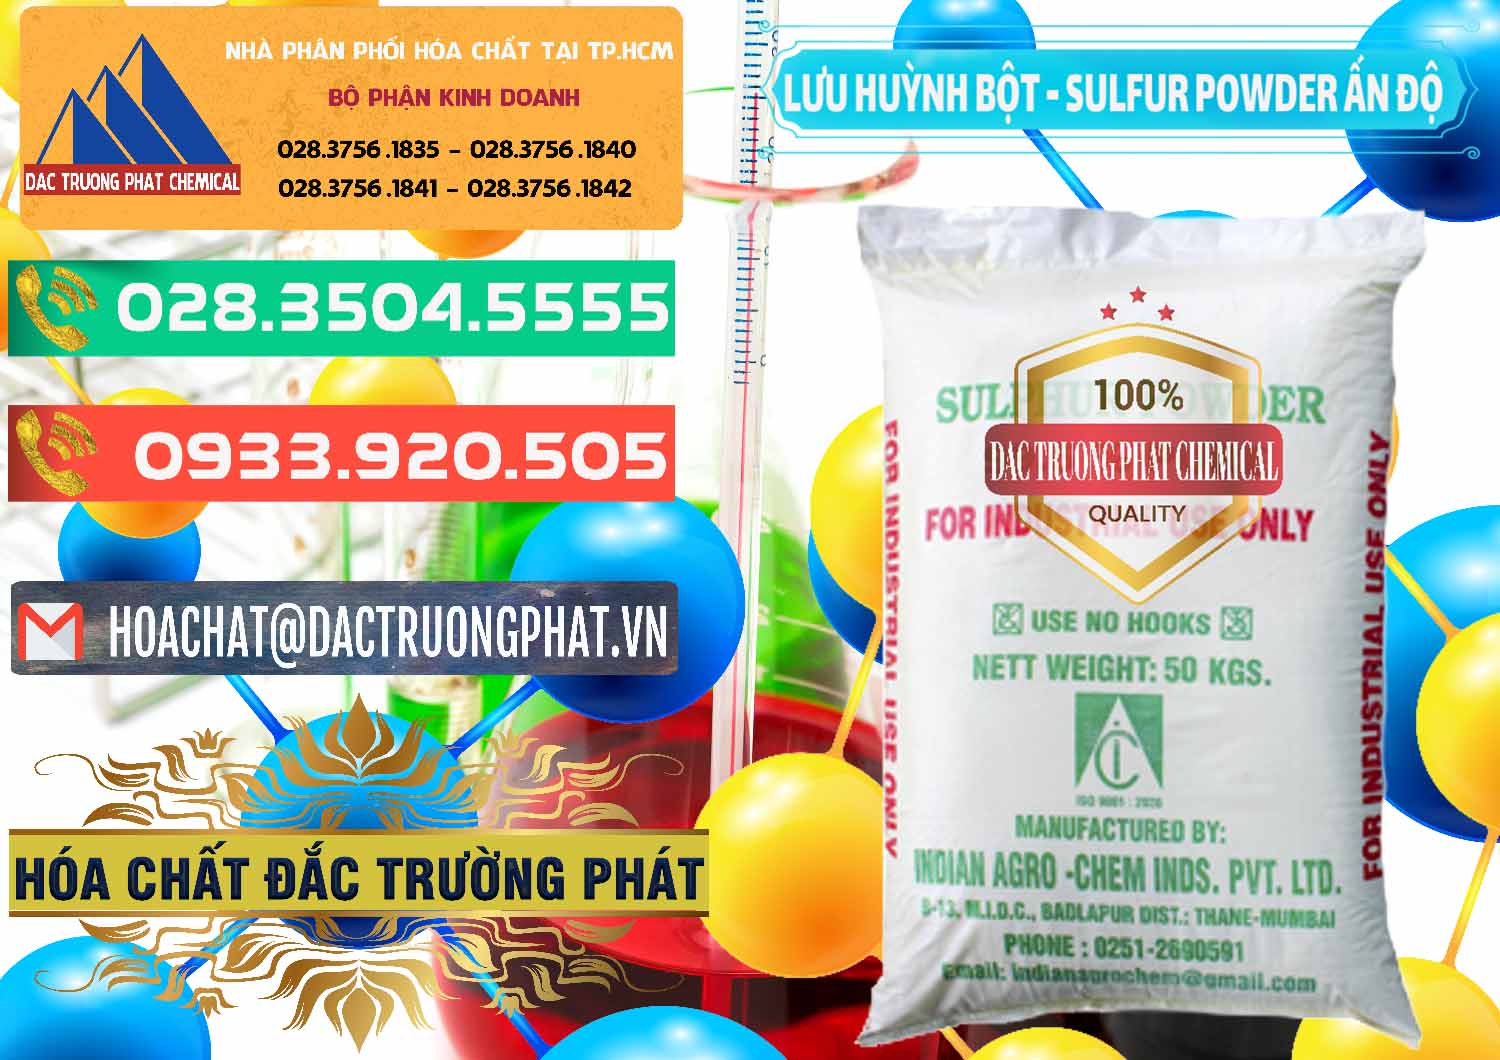 Đơn vị bán và cung cấp Lưu huỳnh Bột - Sulfur Powder Ấn Độ India - 0347 - Công ty chuyên kinh doanh & cung cấp hóa chất tại TP.HCM - congtyhoachat.com.vn